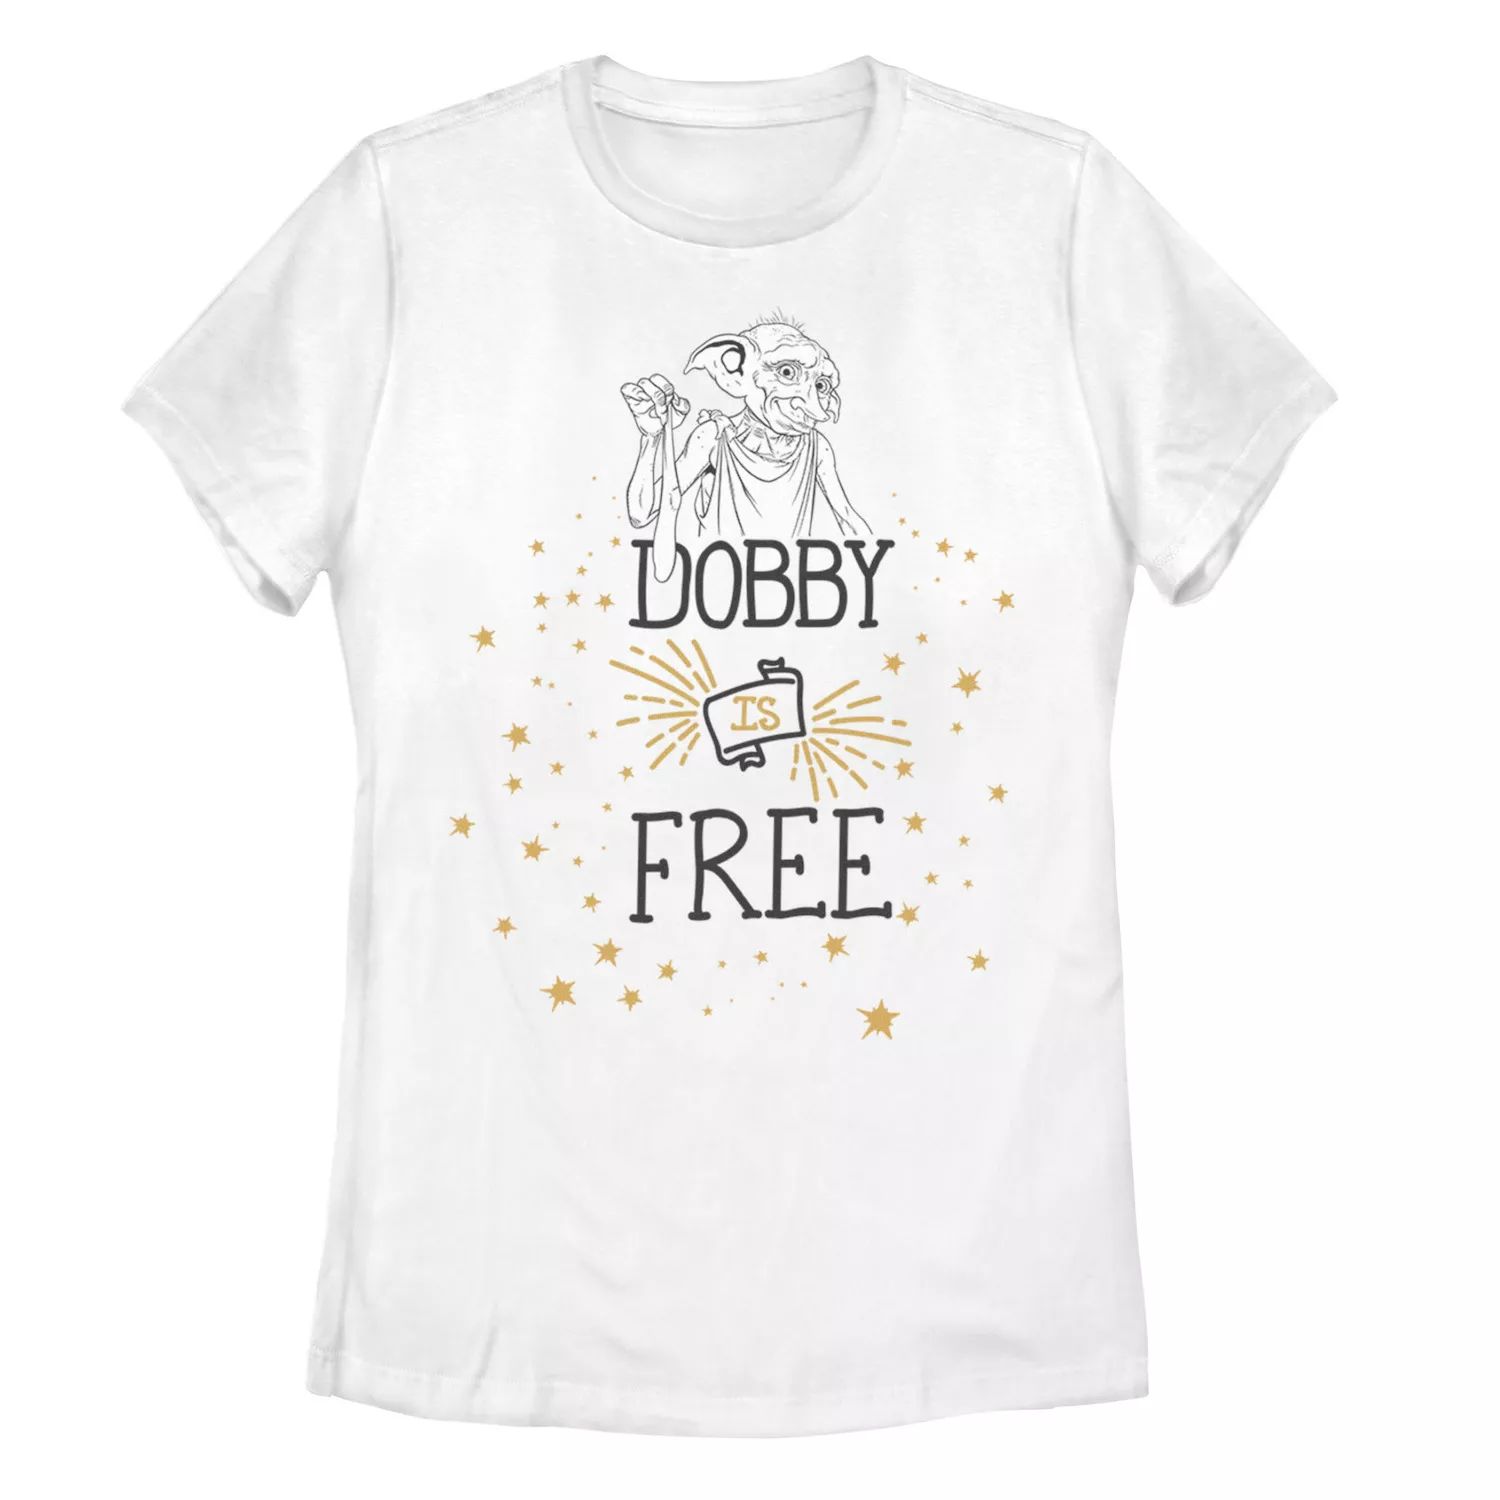 Футболка «Добби с Гарри Поттером» для юниоров — это футболка с рисунком Free Line Art Harry Potter